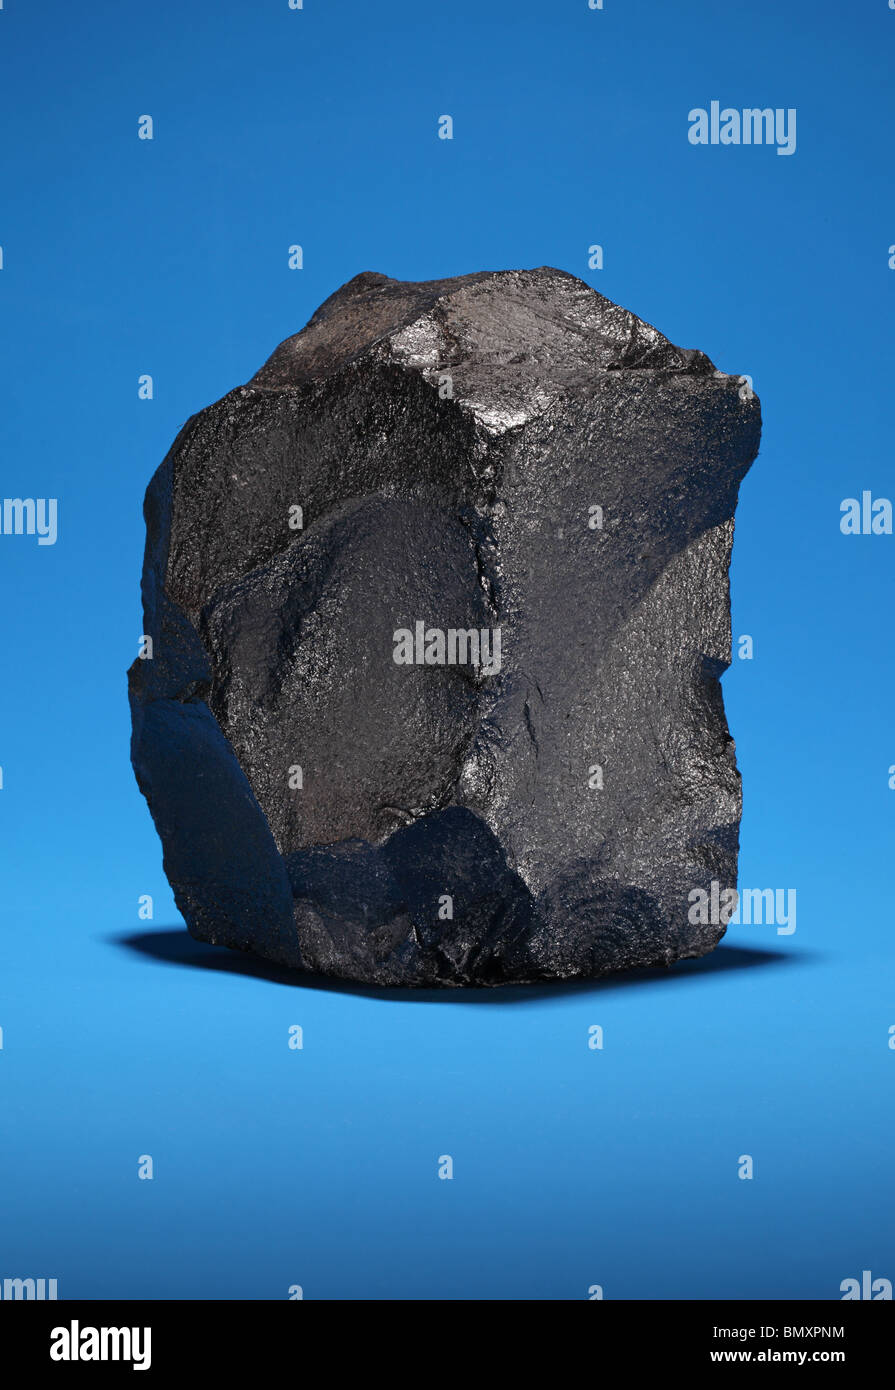 Ein großes Stück bituminöse Steinkohle auf einem leuchtend blauen Hintergrund Stockfoto